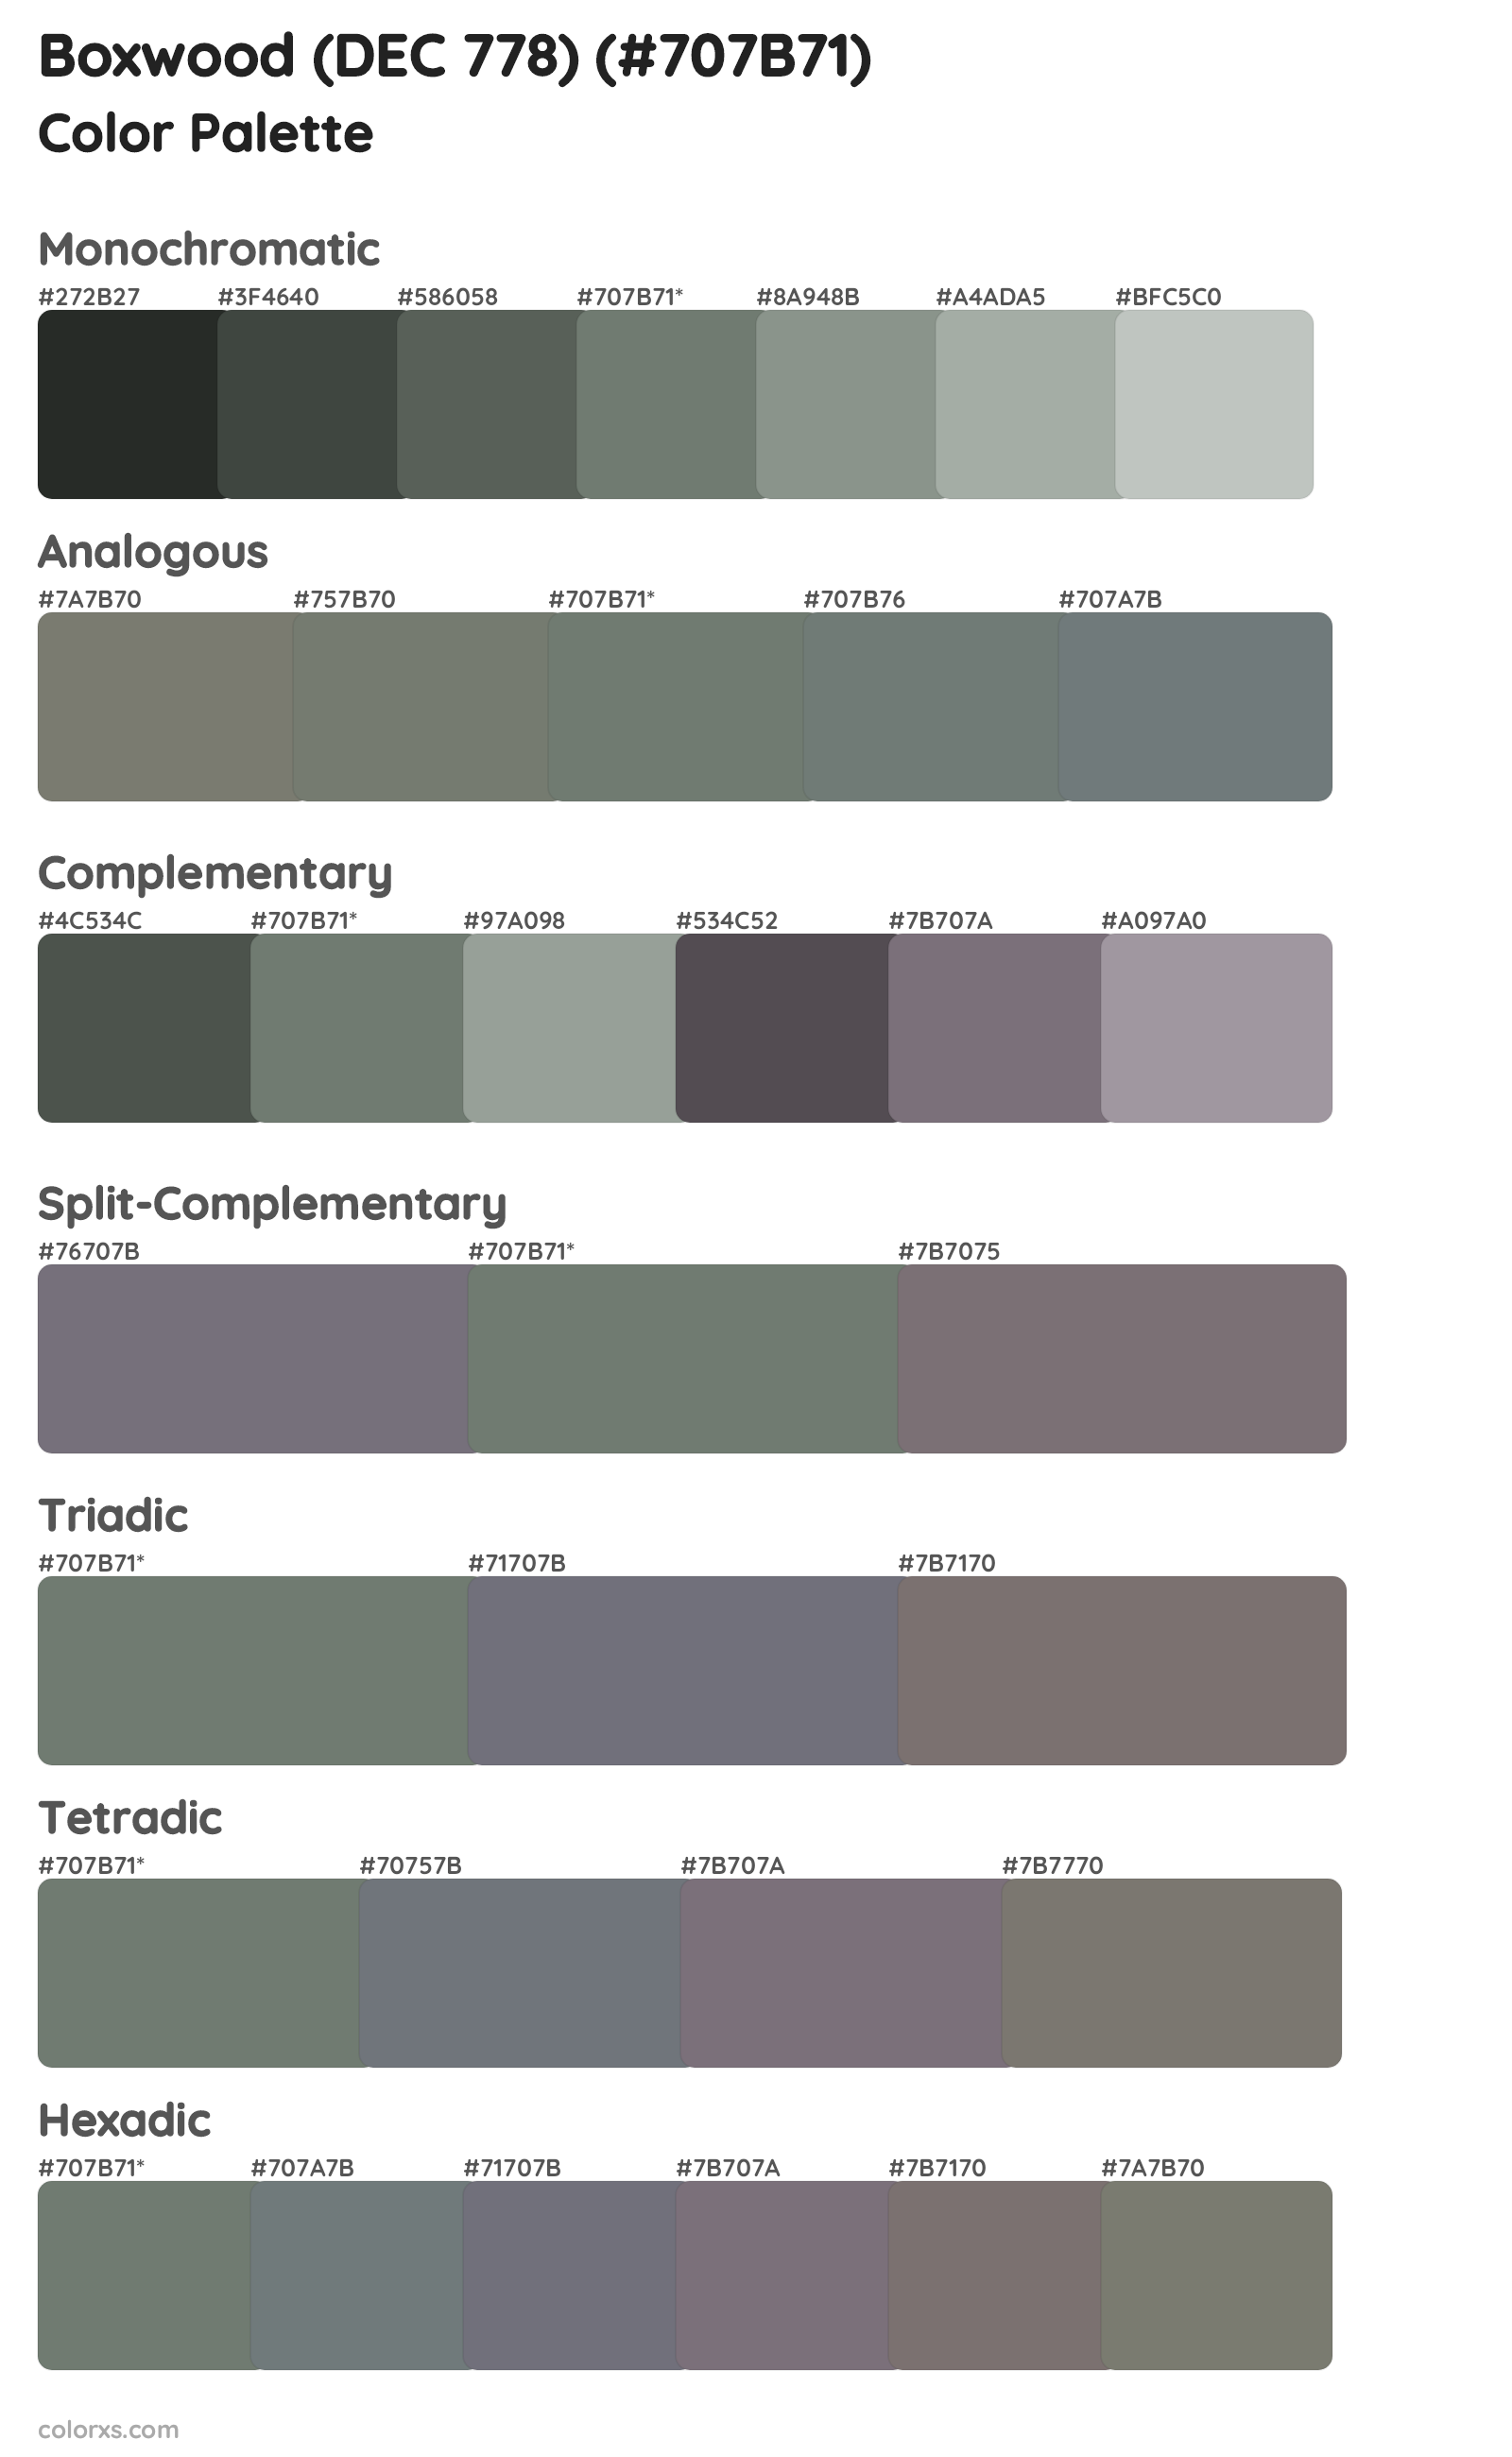 Boxwood (DEC 778) Color Scheme Palettes